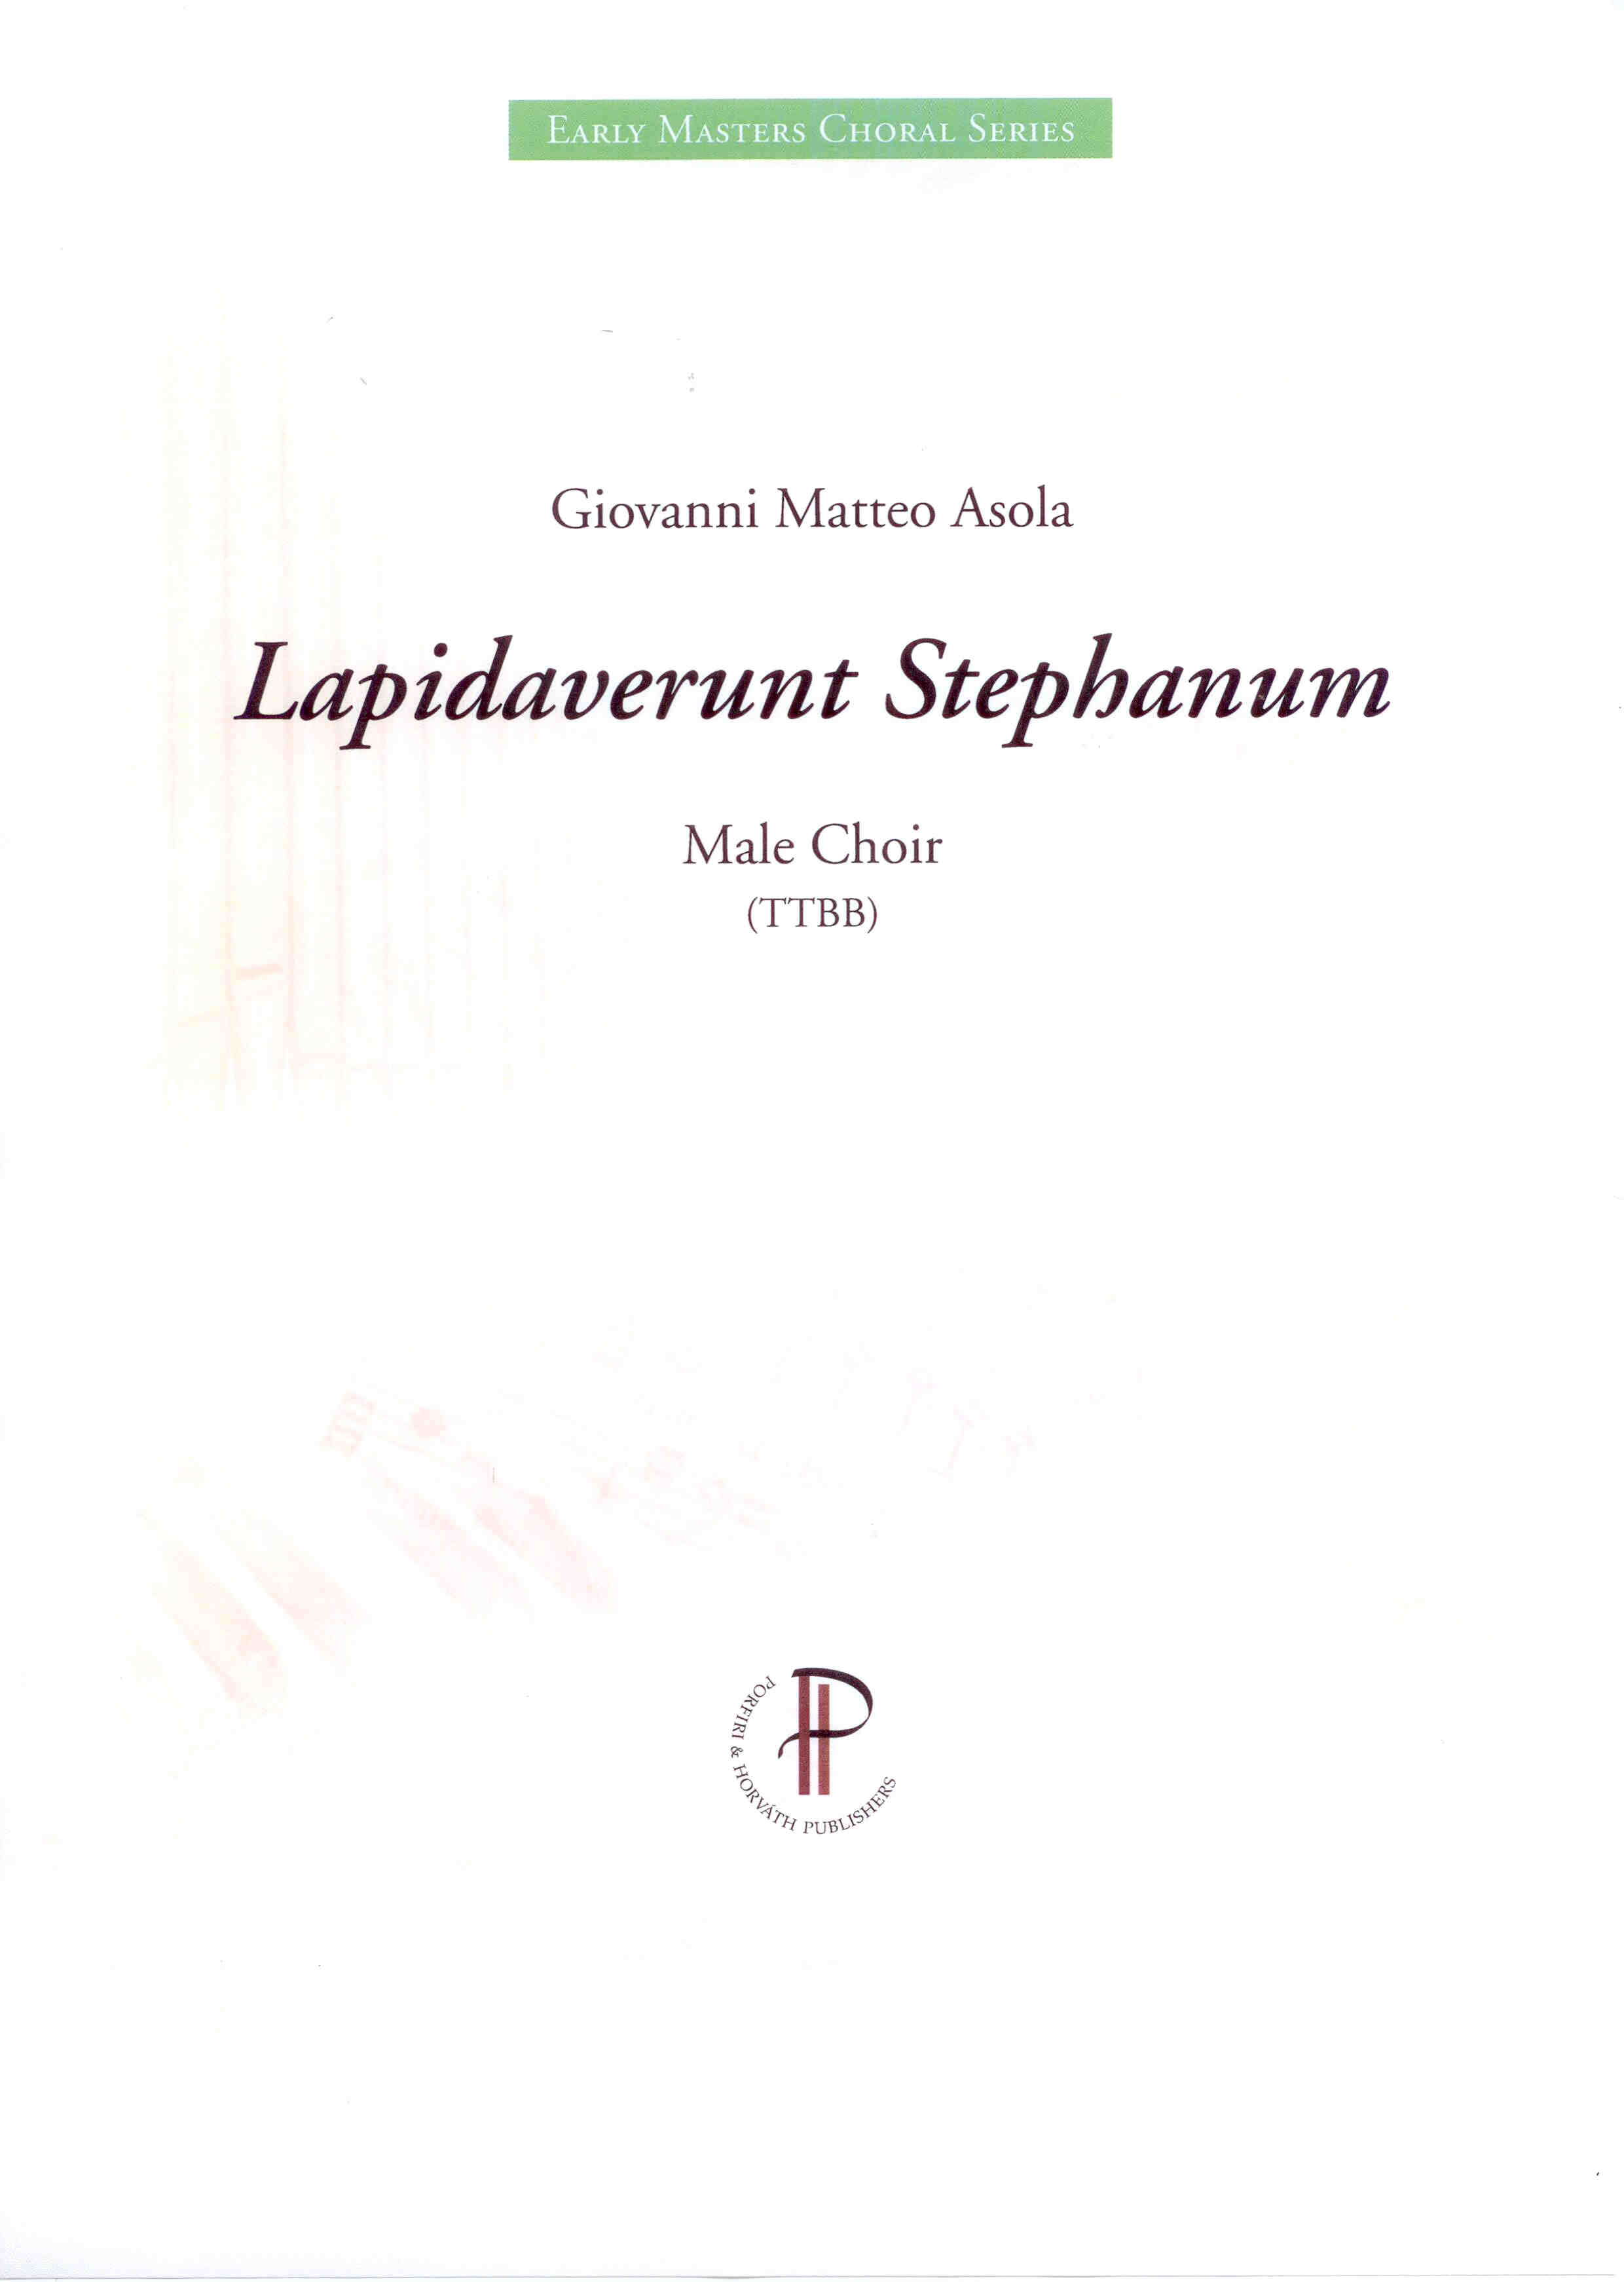 Lapidaverunt Stephanum - Show sample score